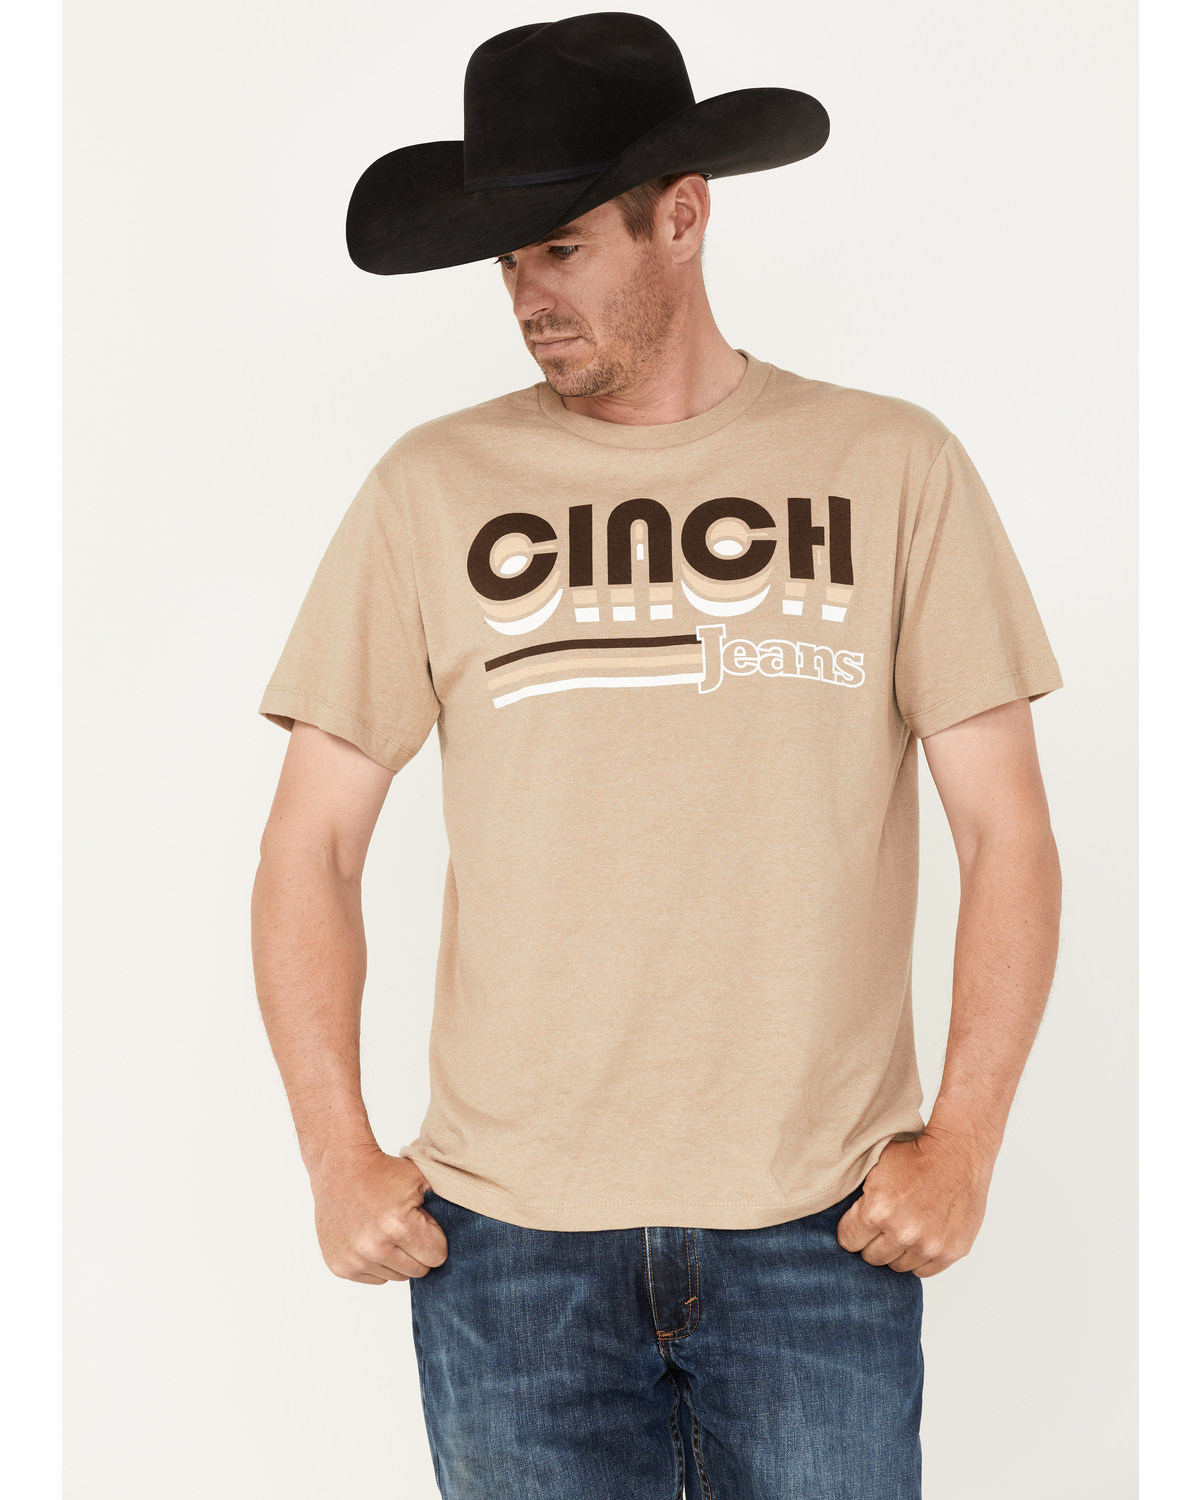 Cinch Men's Jeans Logo Graphic T-Shirt